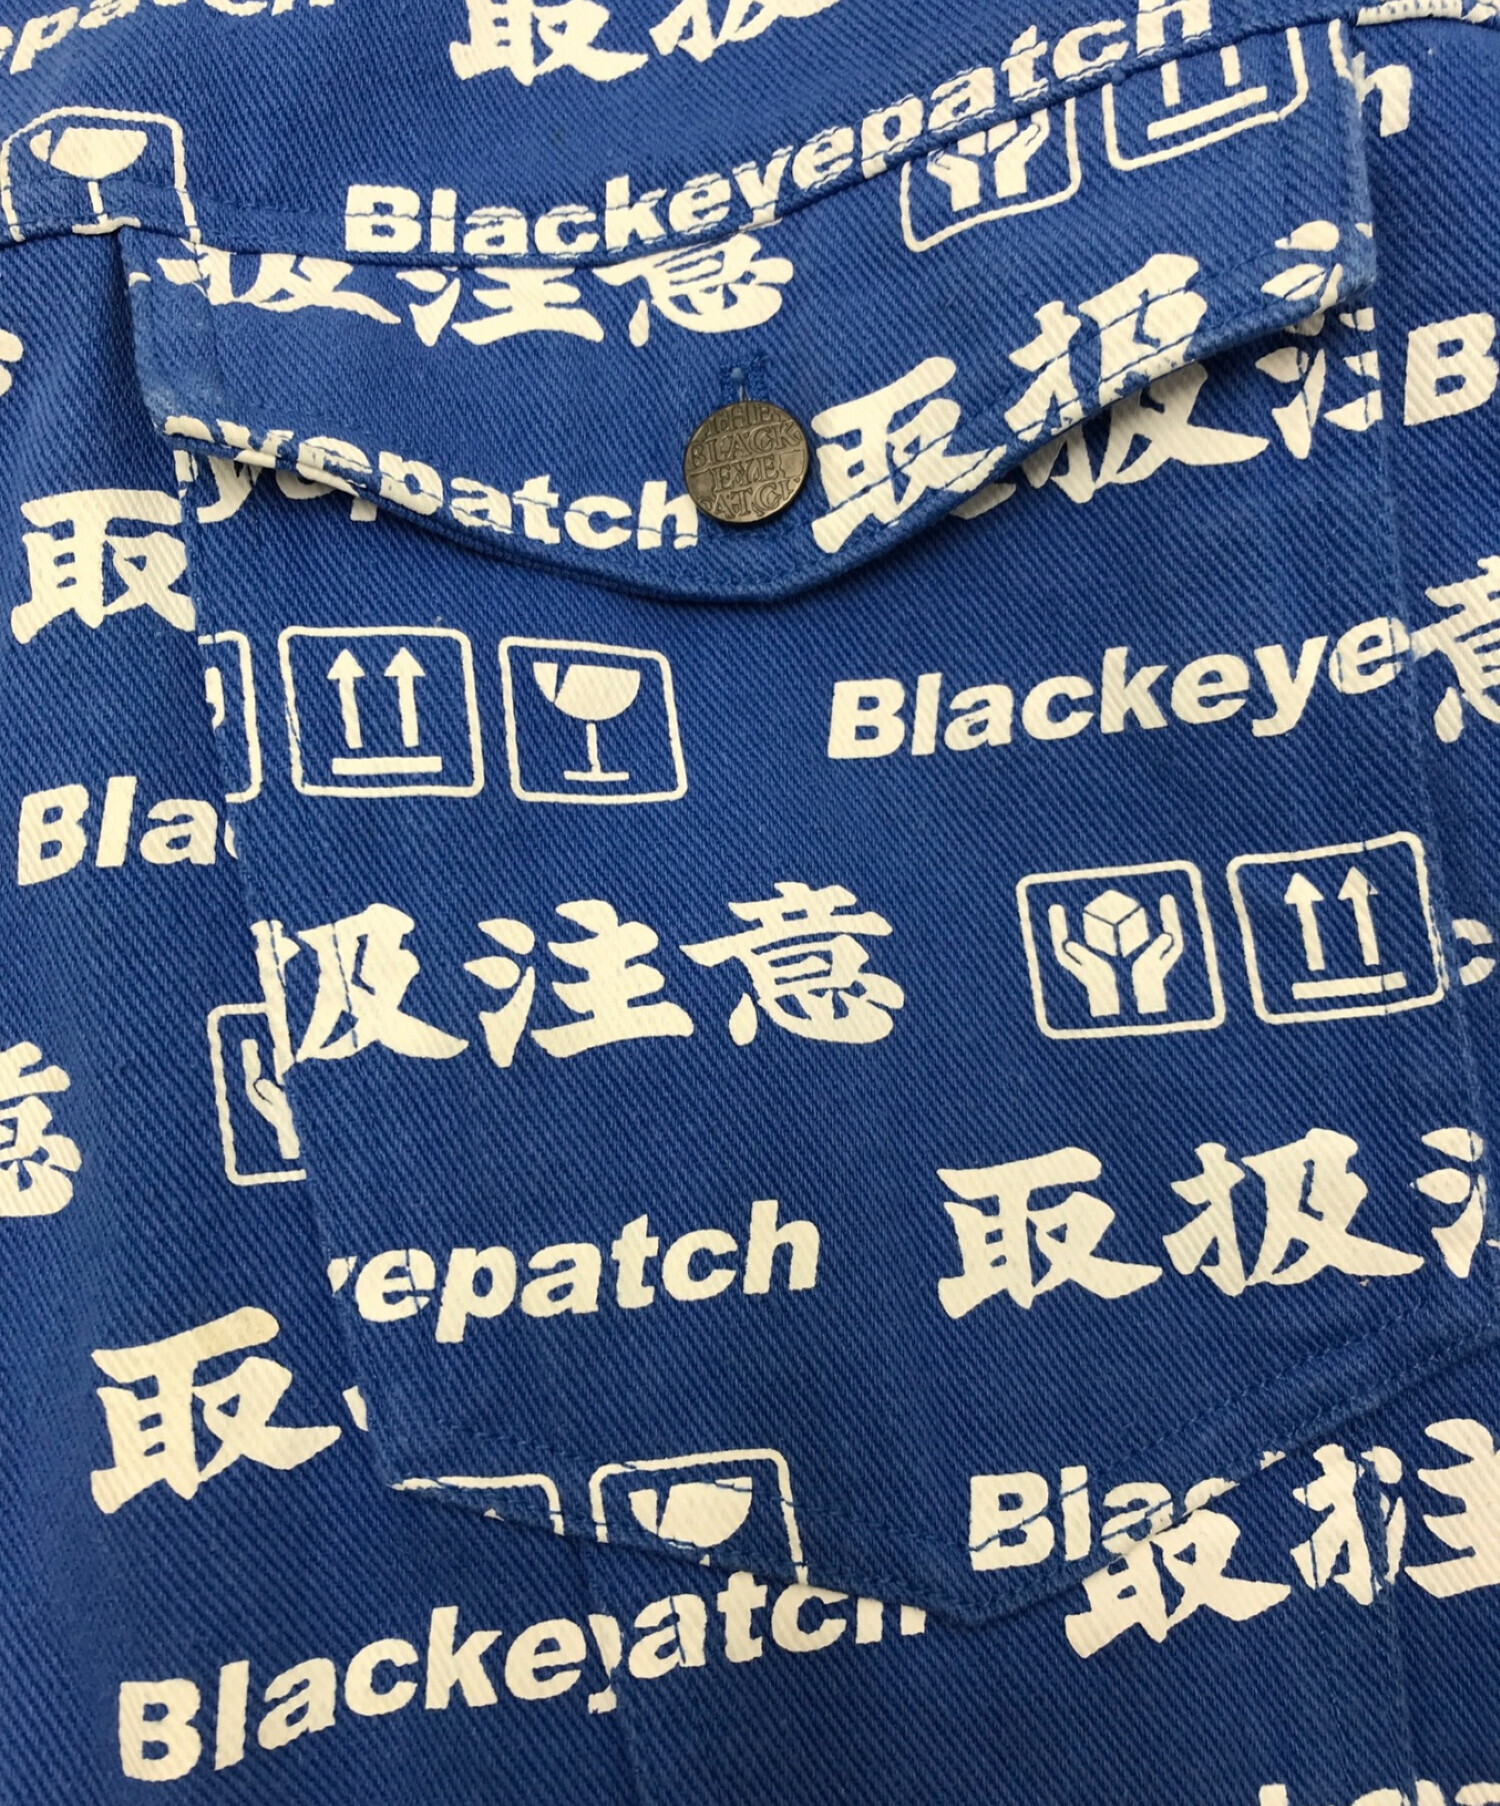 BlackEyePatch (ブラックアイパッチ) 19SS HANDLE WITH CARE JACKET ブルー×ホワイト サイズ:L